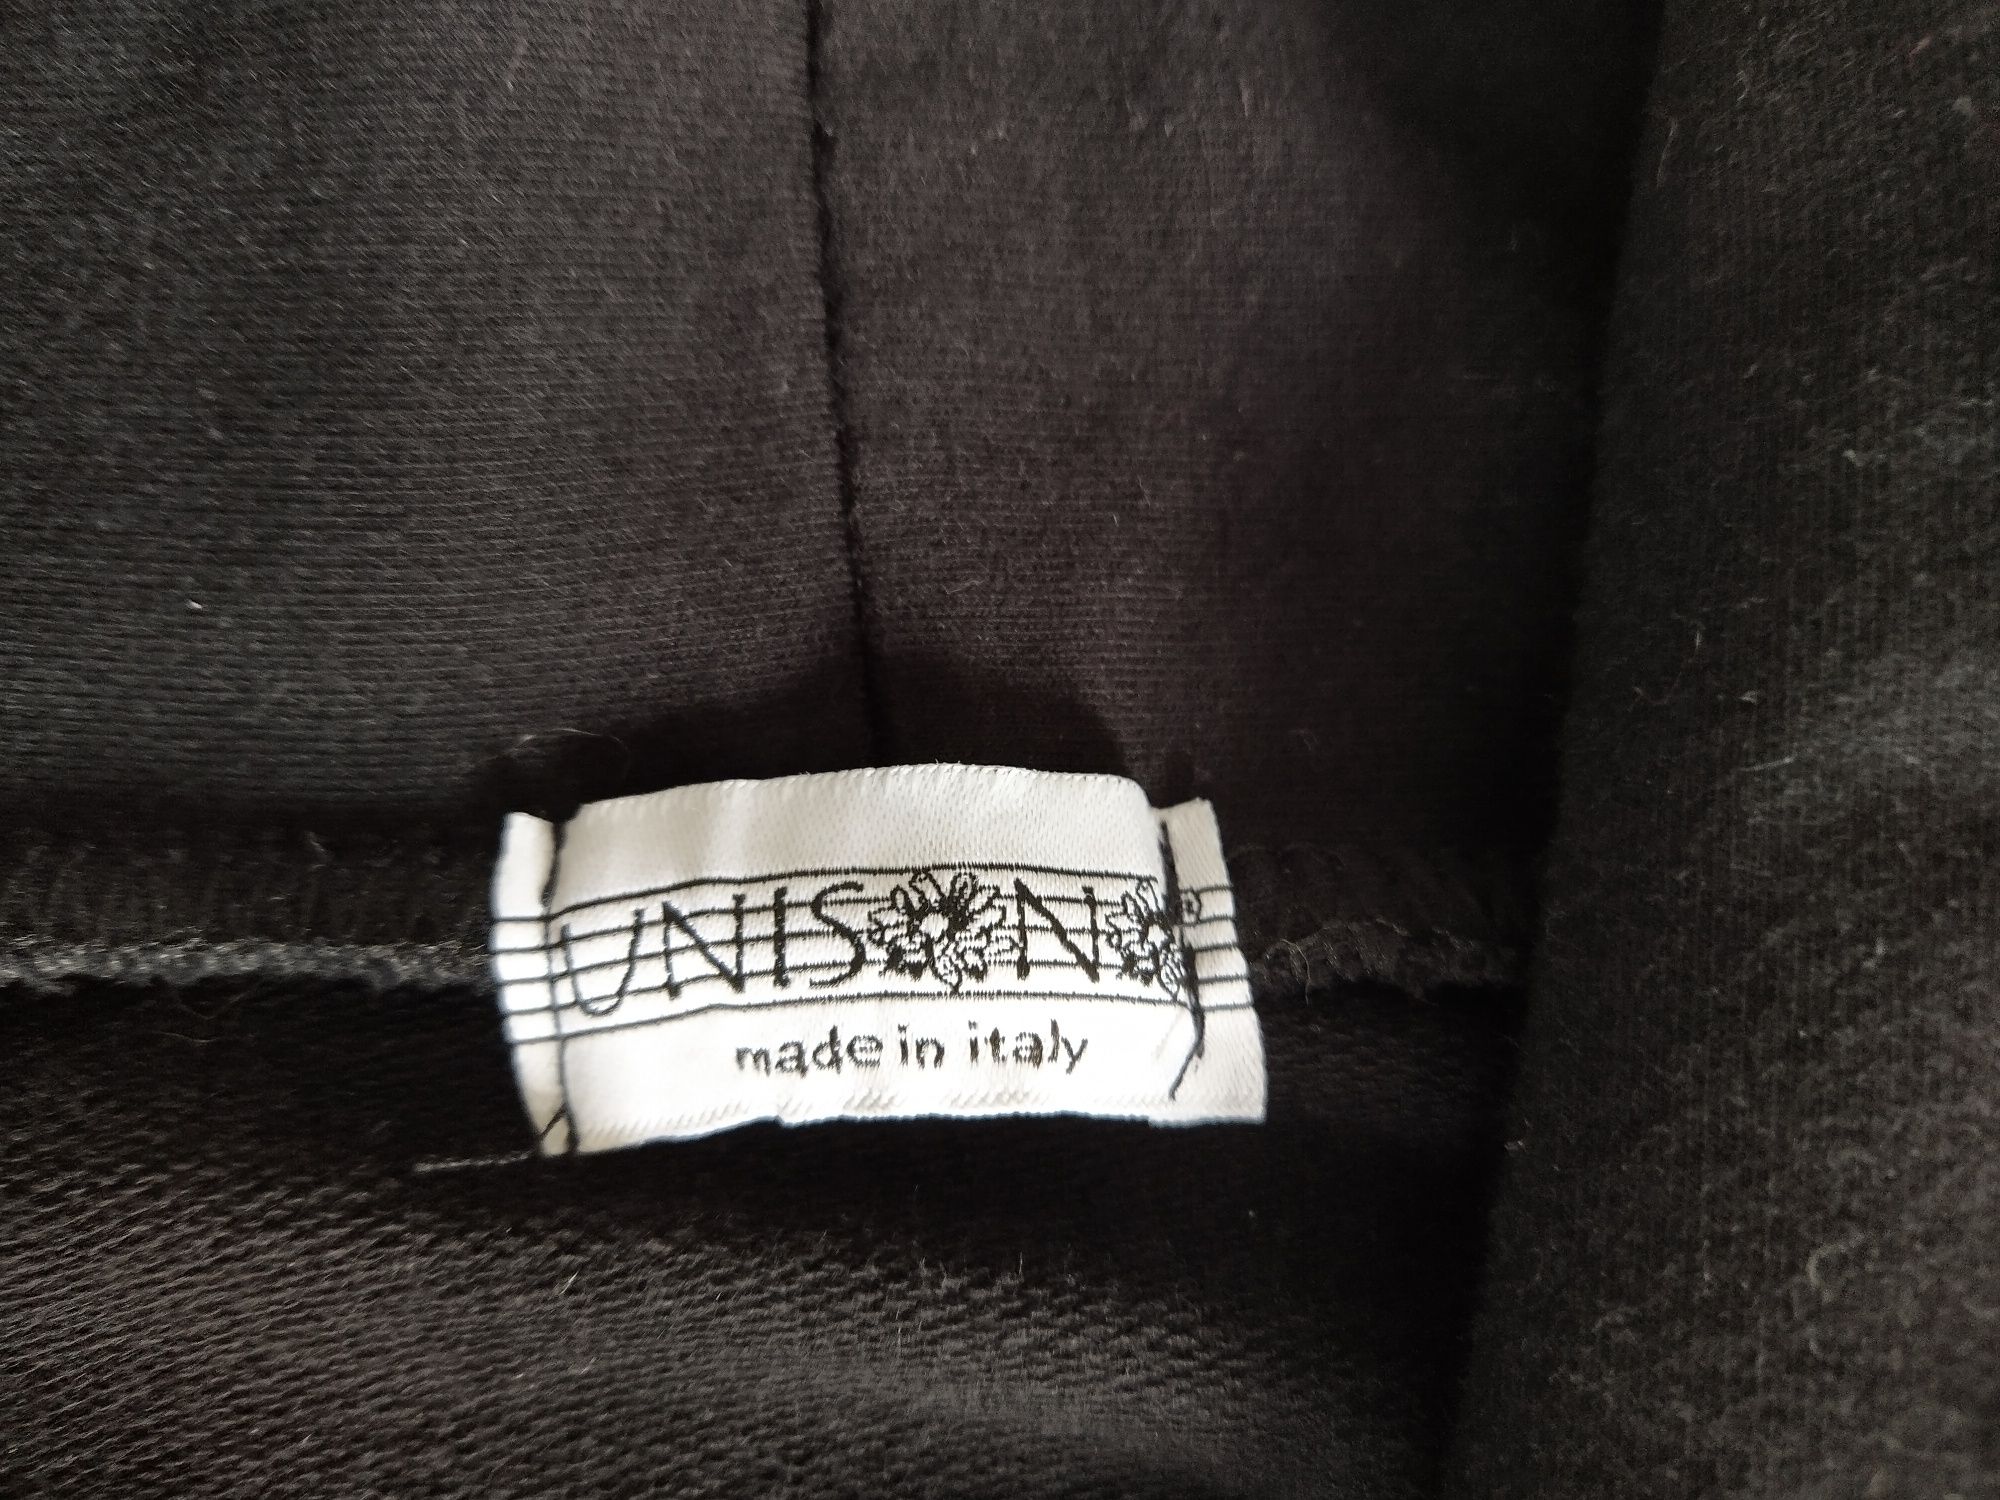 Czarna bluza dresowa UNISONO S - M, niezapinana